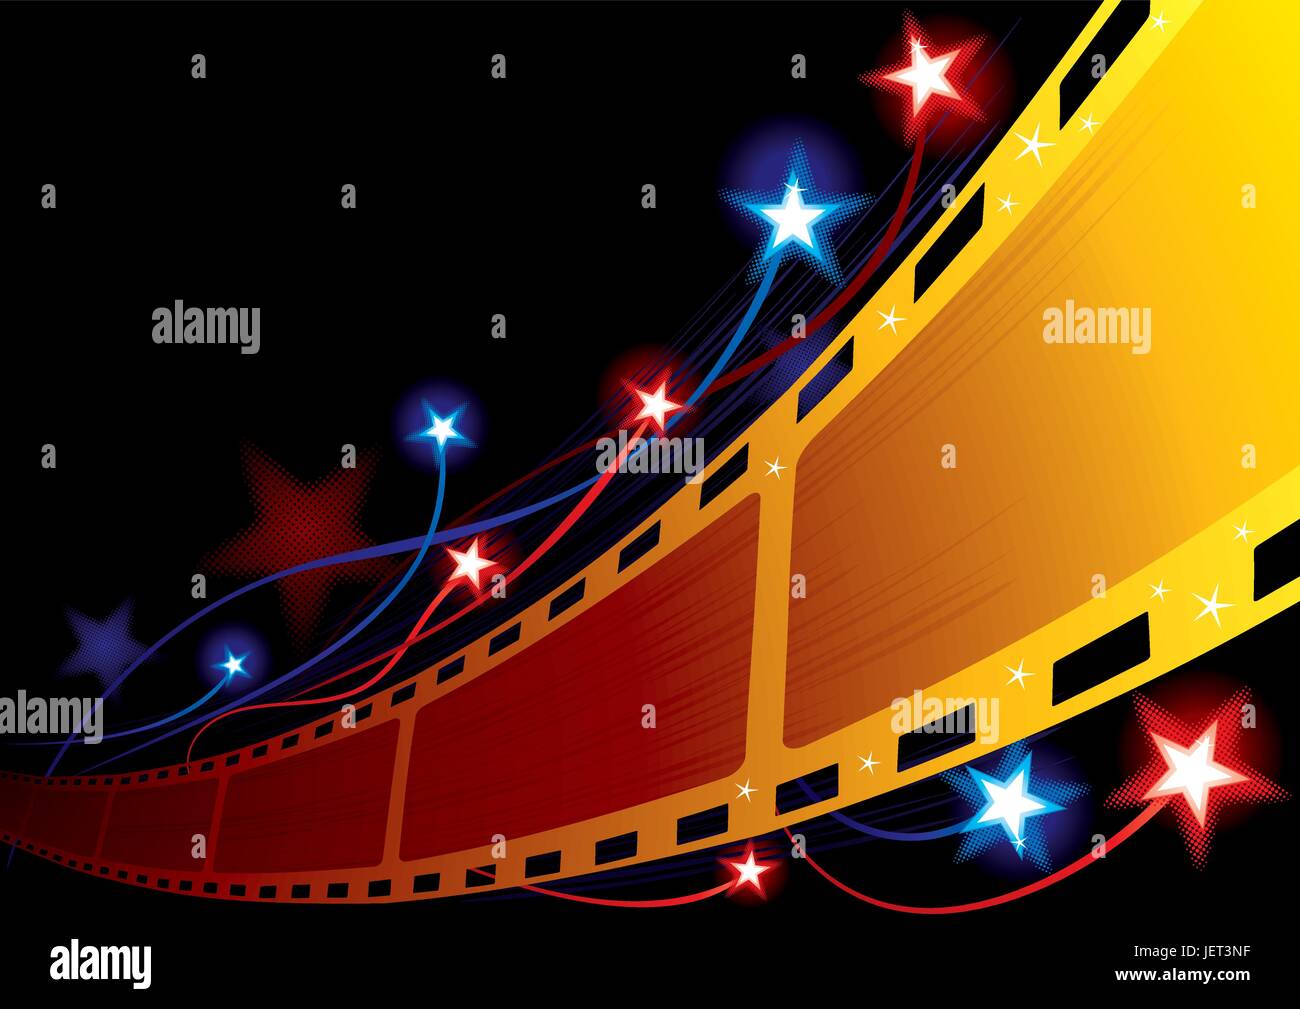 Plakat, Kino, Film, Film, Filme, Auszeichnungen, Sterne, film, zeigen, zeigen, Stock Vektor